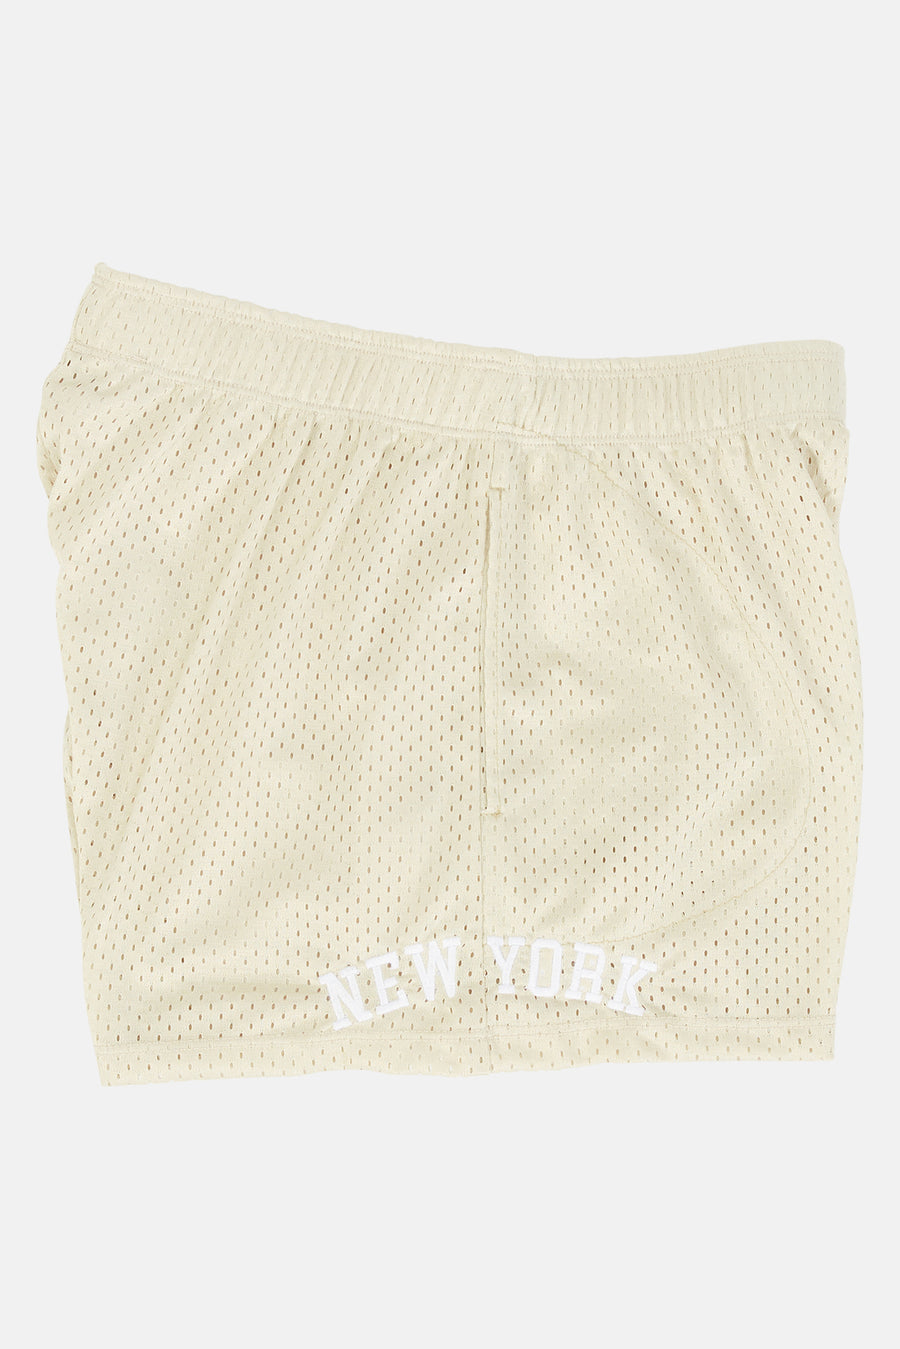 NY Mesh Shorts Taupe / Black - blueandcream